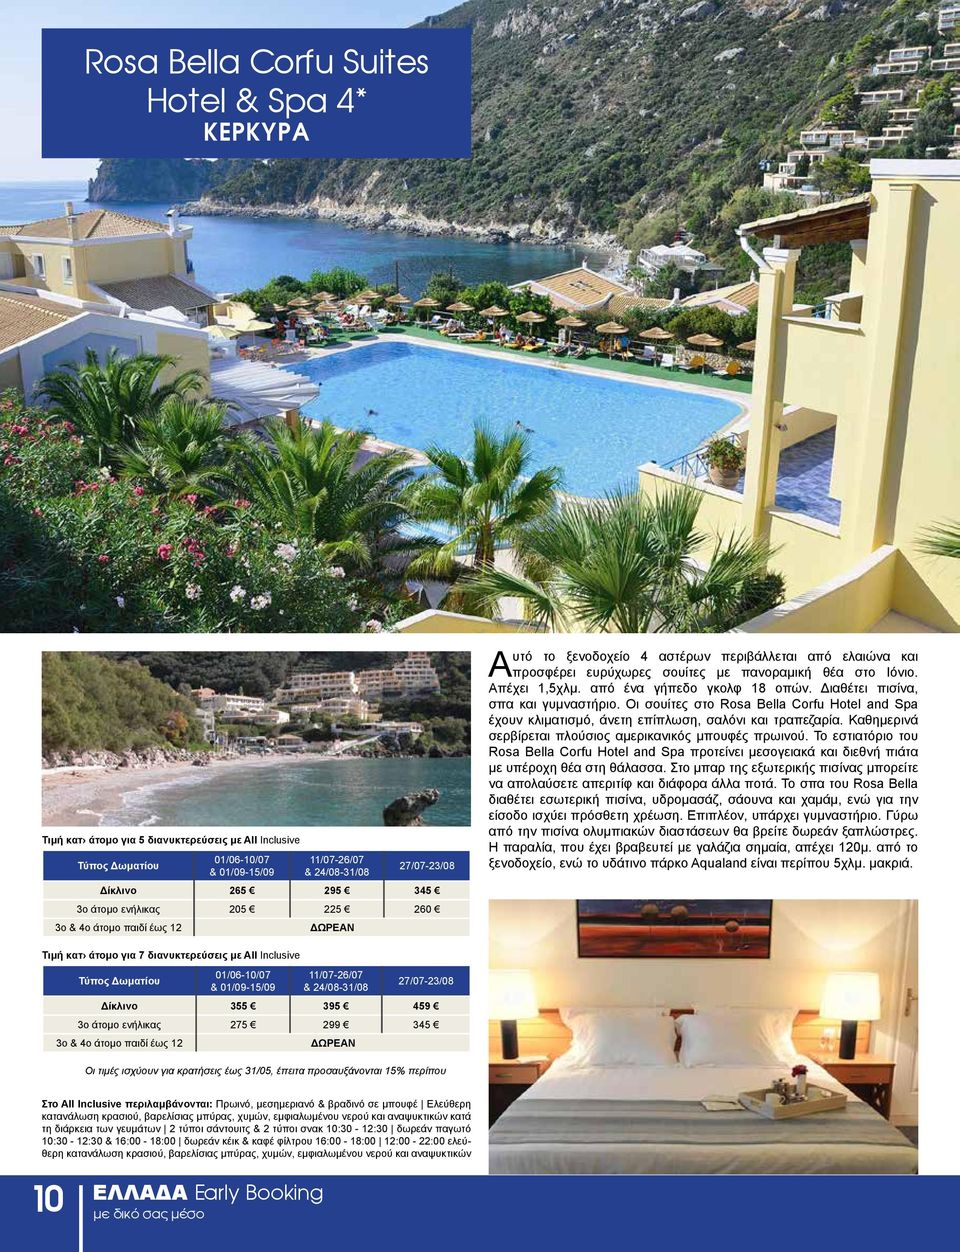 Διαθέτει πισίνα, σπα και γυμναστήριο. Οι σουίτες στο Rosa Bella Corfu Hotel and Spa έχουν κλιματισμό, άνετη επίπλωση, σαλόνι και τραπεζαρία.